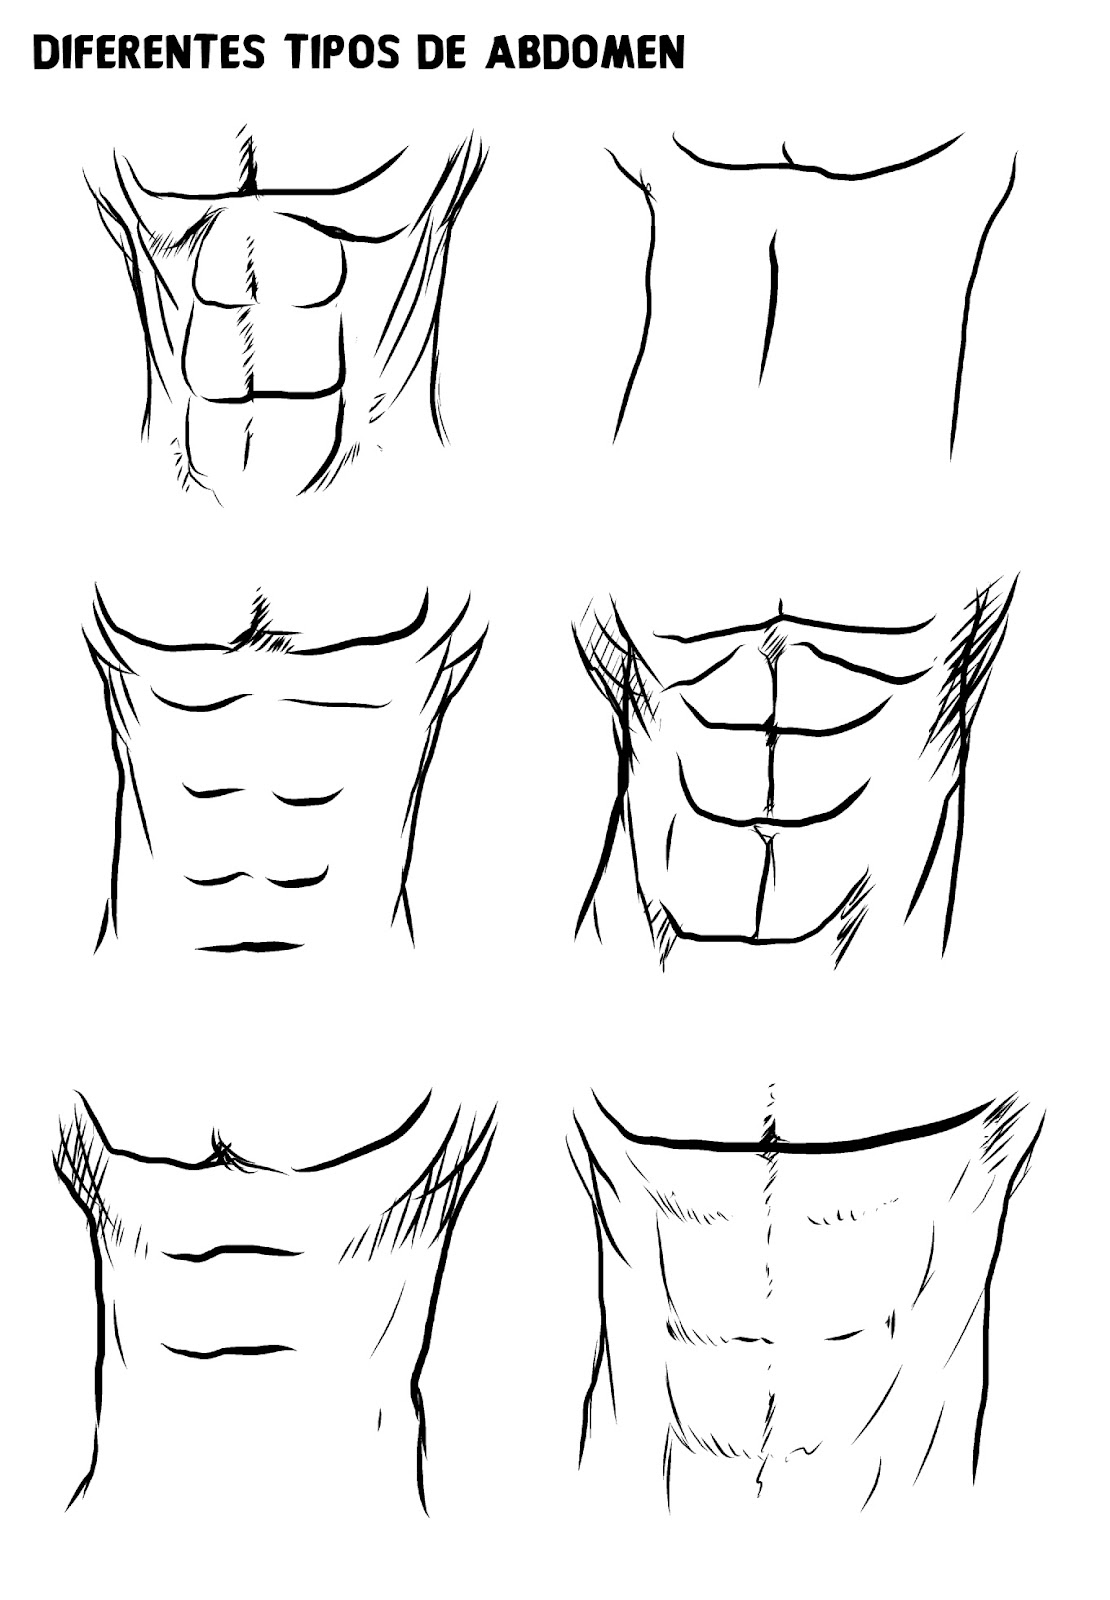 Sutori: Cómo dibujar músculos sin consumir esteroides